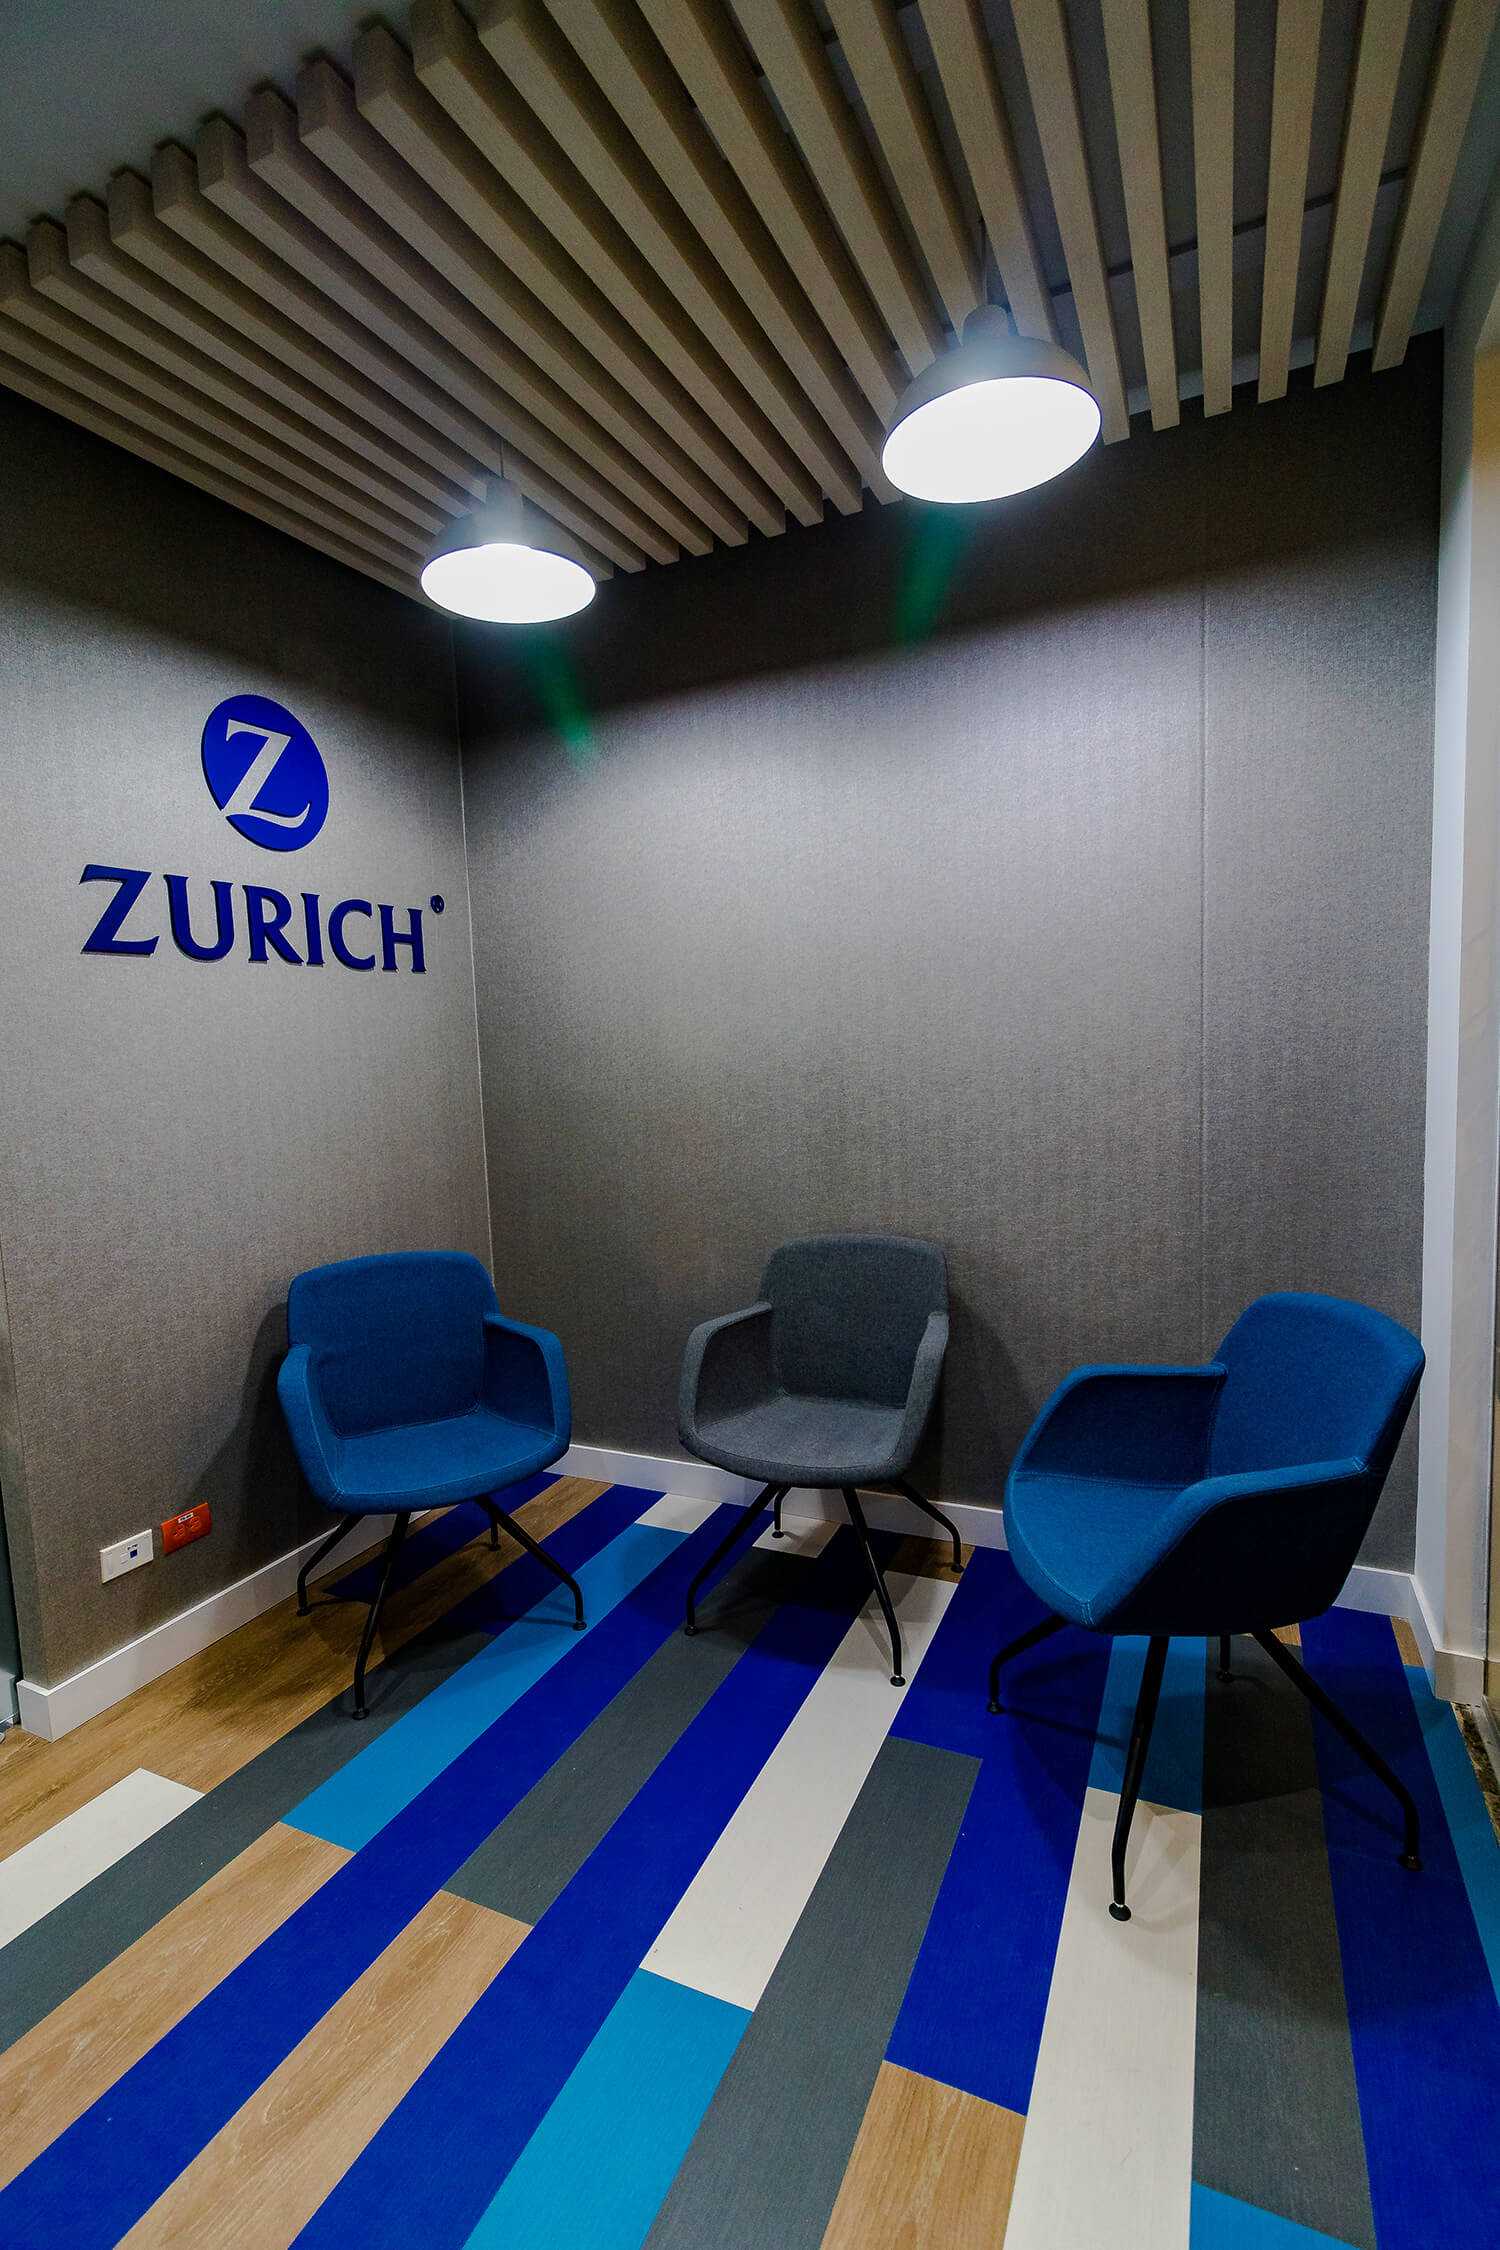 Zurich - Operations - Finances